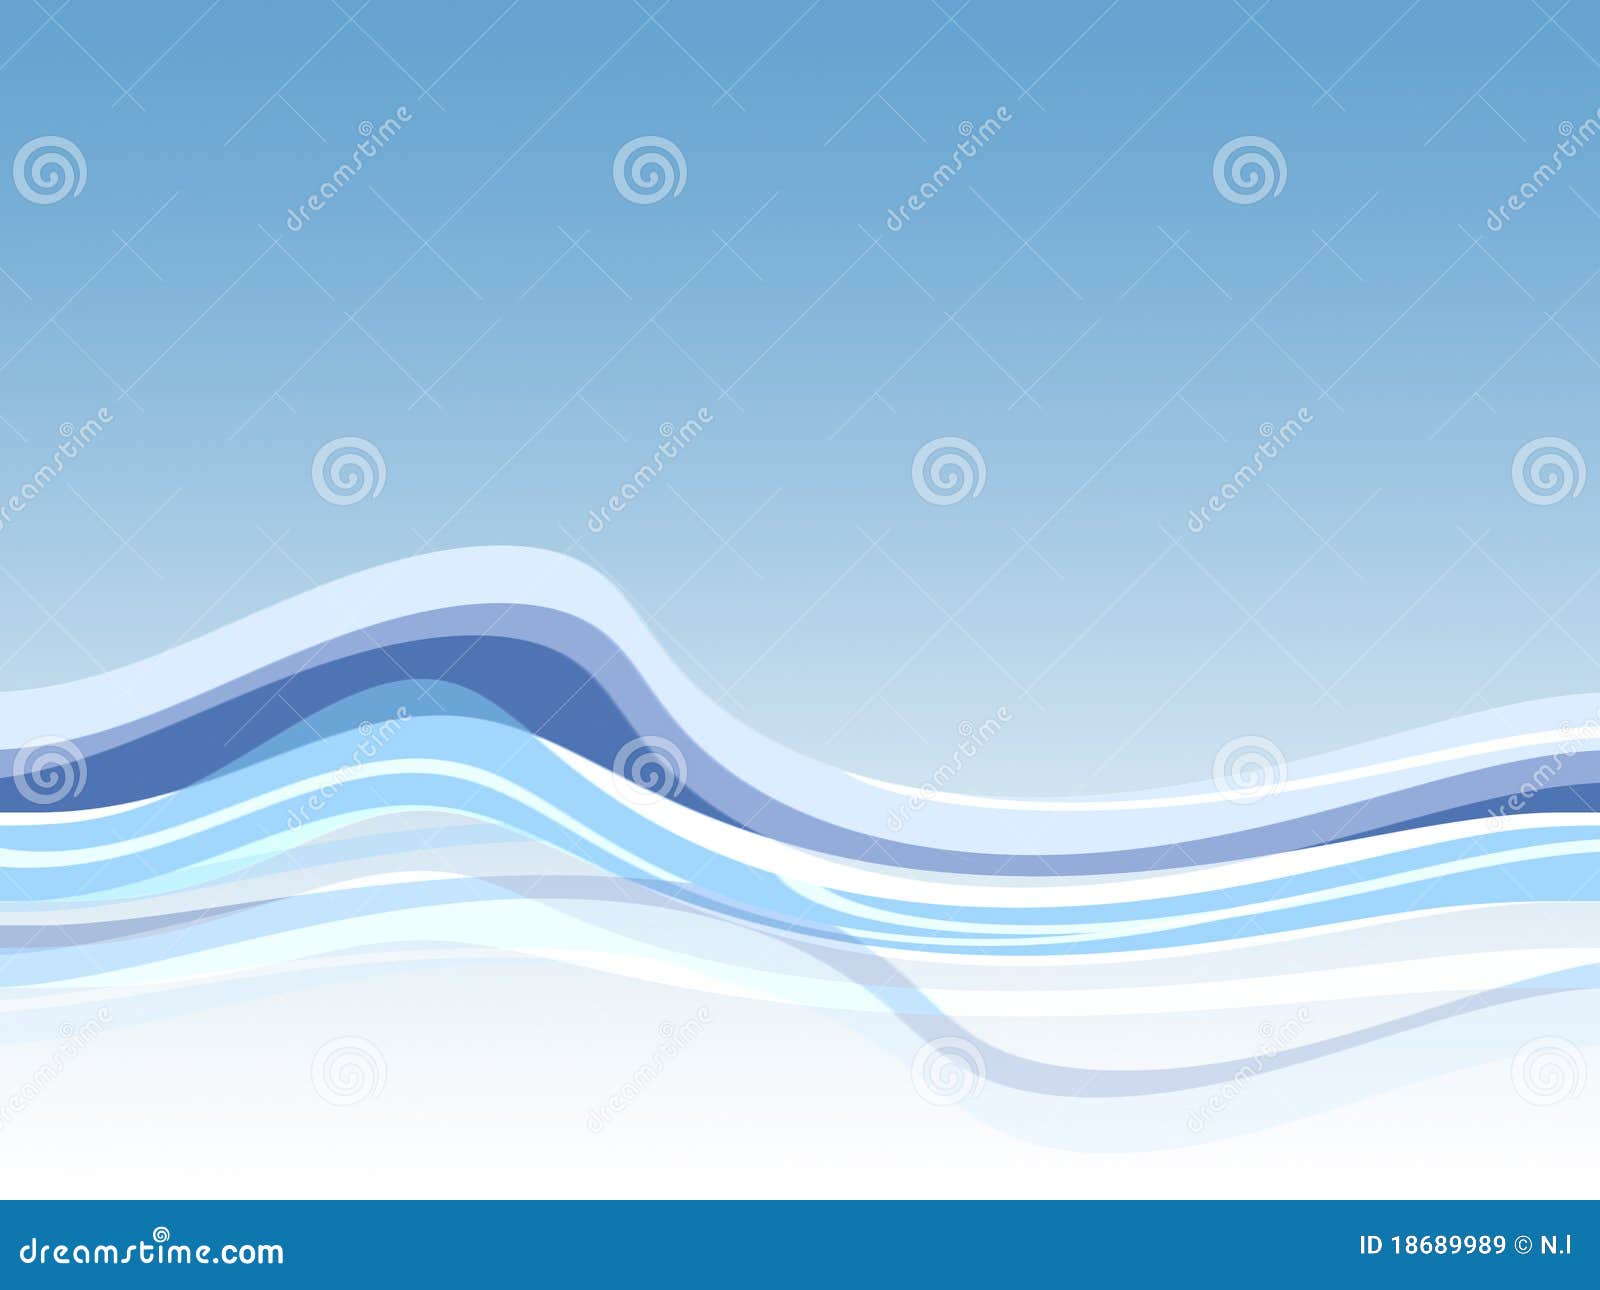 Blue wave background stock illustration. Illustration of ocean - 18689989